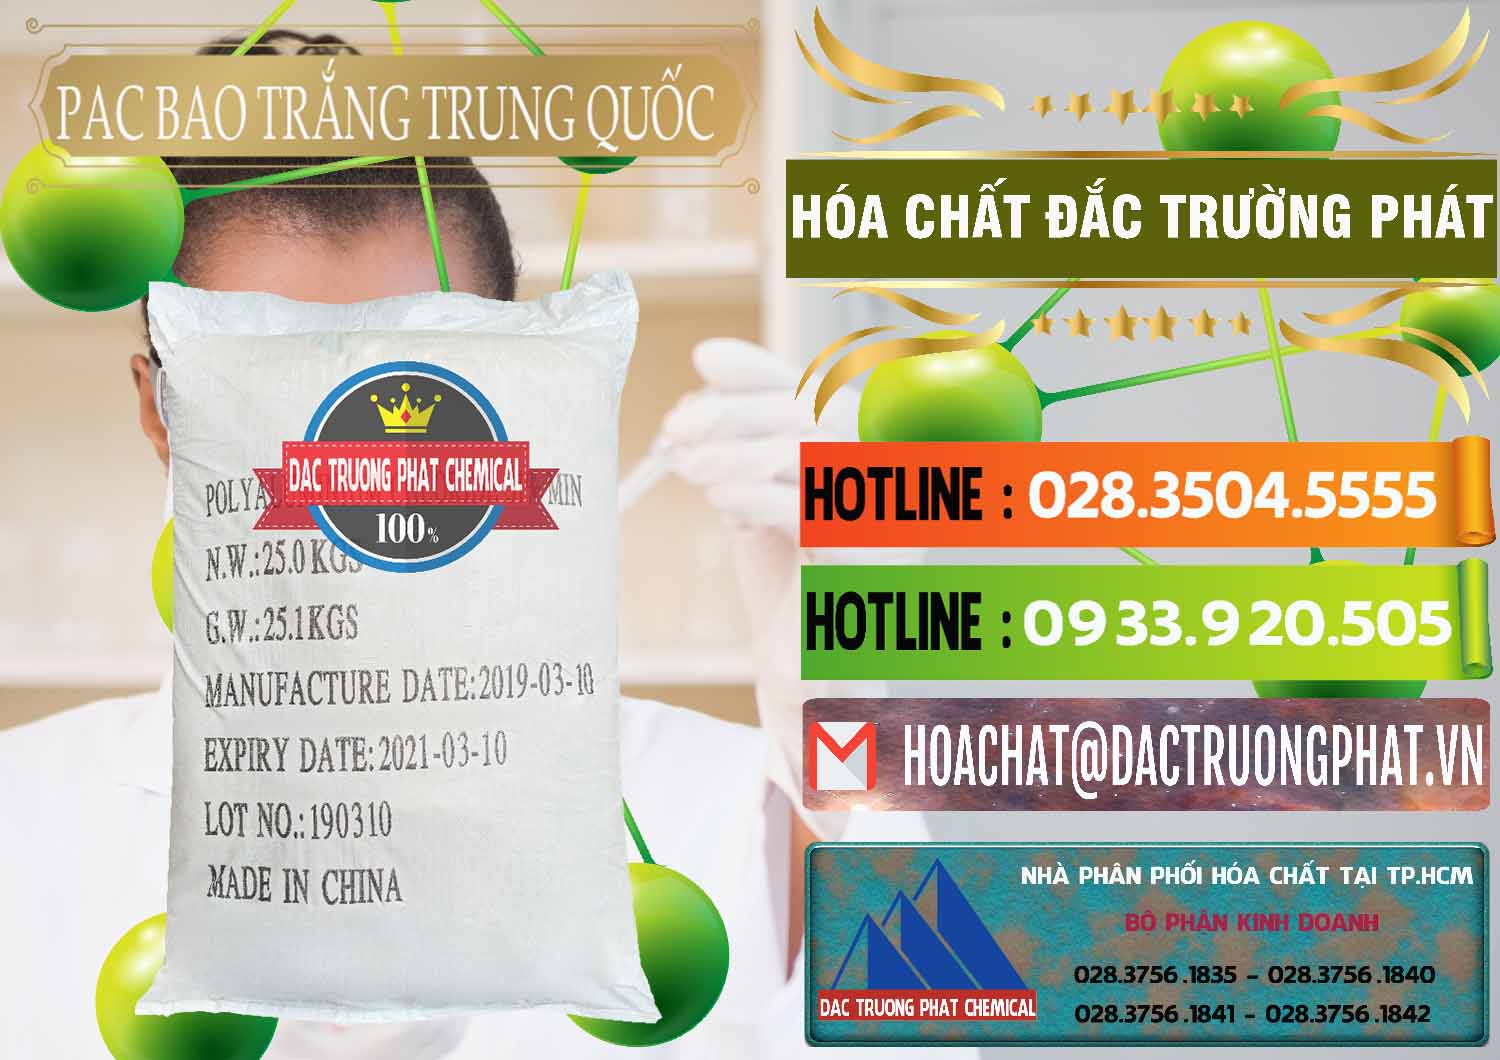 Chuyên cung cấp & bán PAC - Polyaluminium Chloride Bao Trắng Trung Quốc China - 0108 - Phân phối & cung cấp hóa chất tại TP.HCM - cungcaphoachat.com.vn